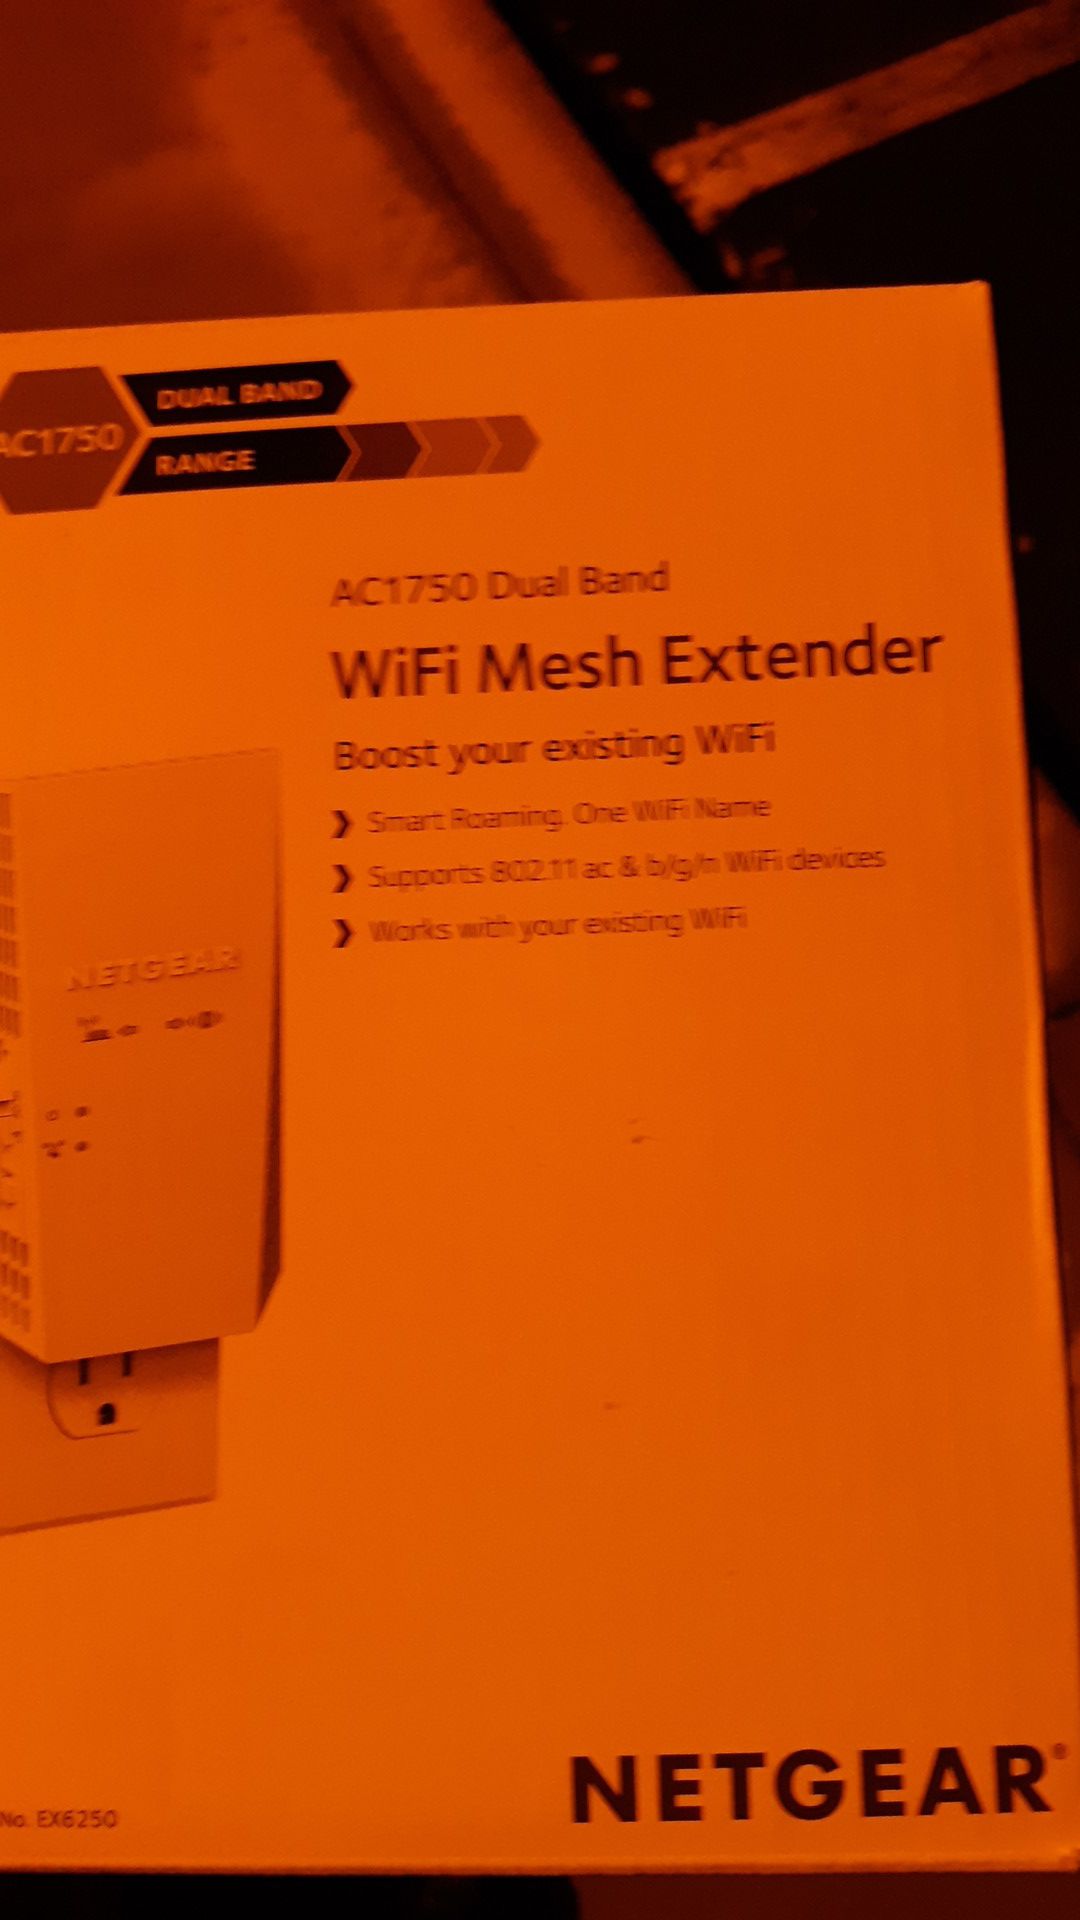 Netgear AC1750 Dual Band Wifi mesh extender